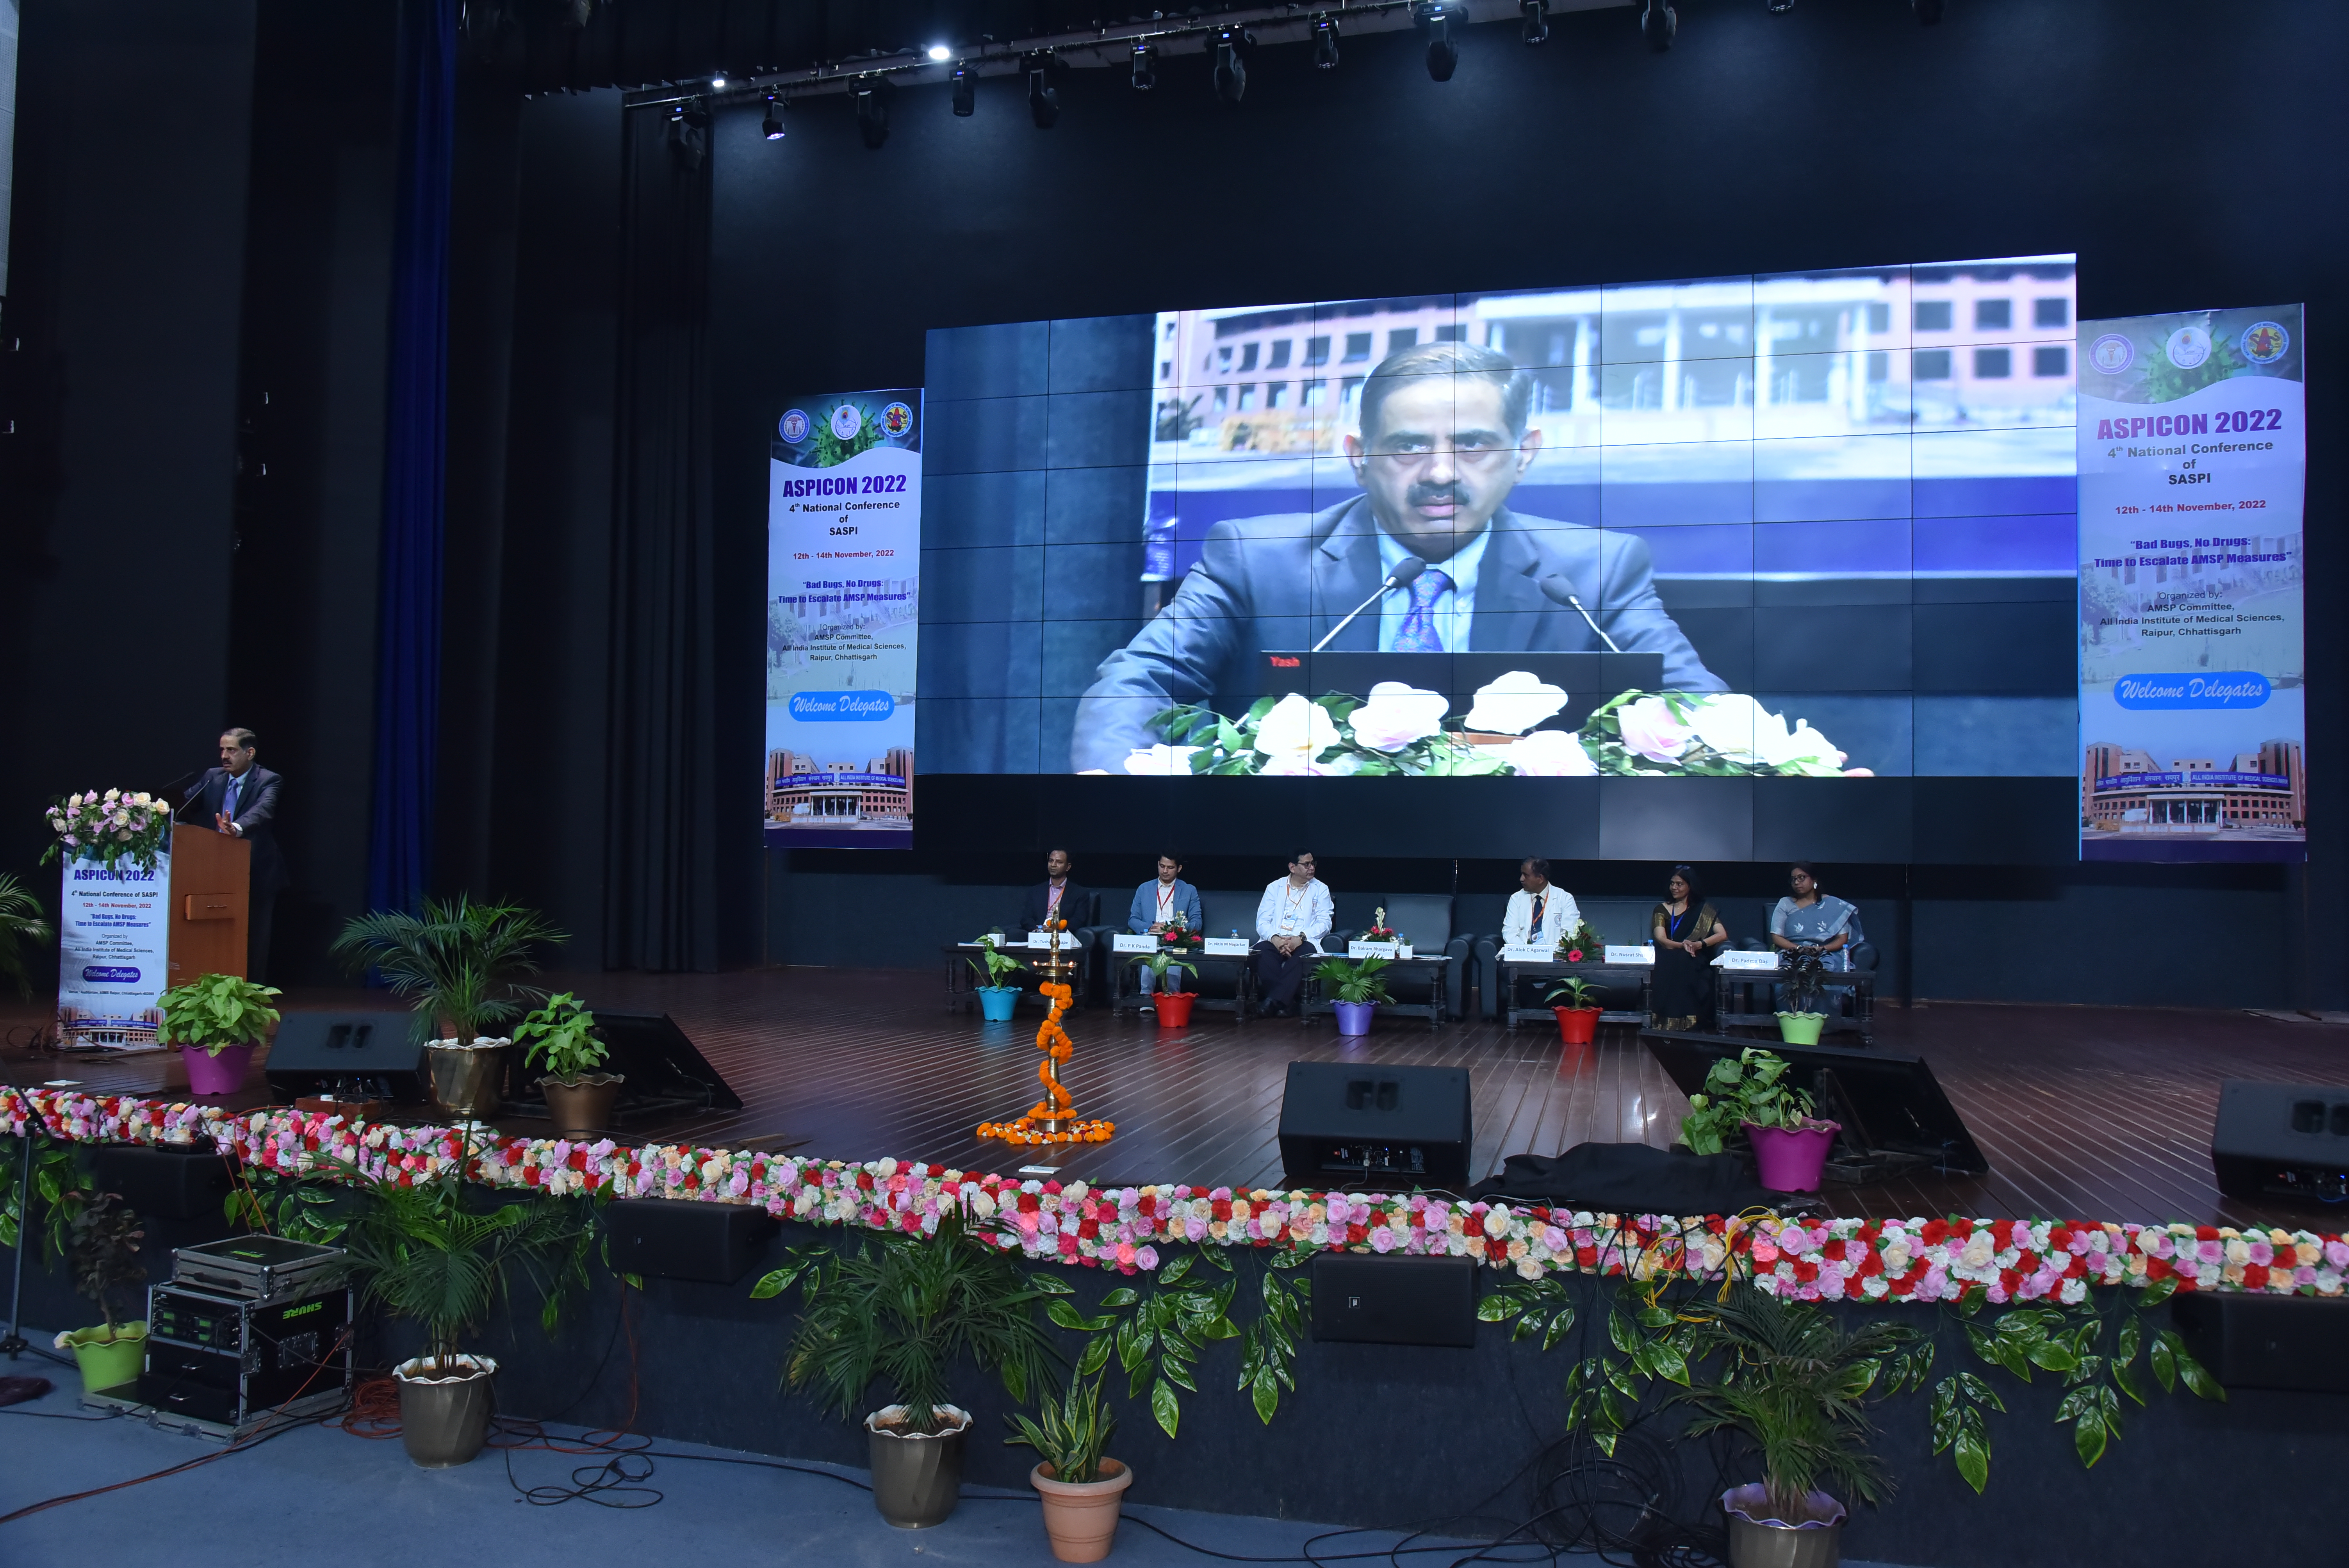  ASPICON 2022, भारत में एंटीमाइक्रोबियल स्टीवर्डशिप पर चौथा राष्ट्रीय सम्मेलन।